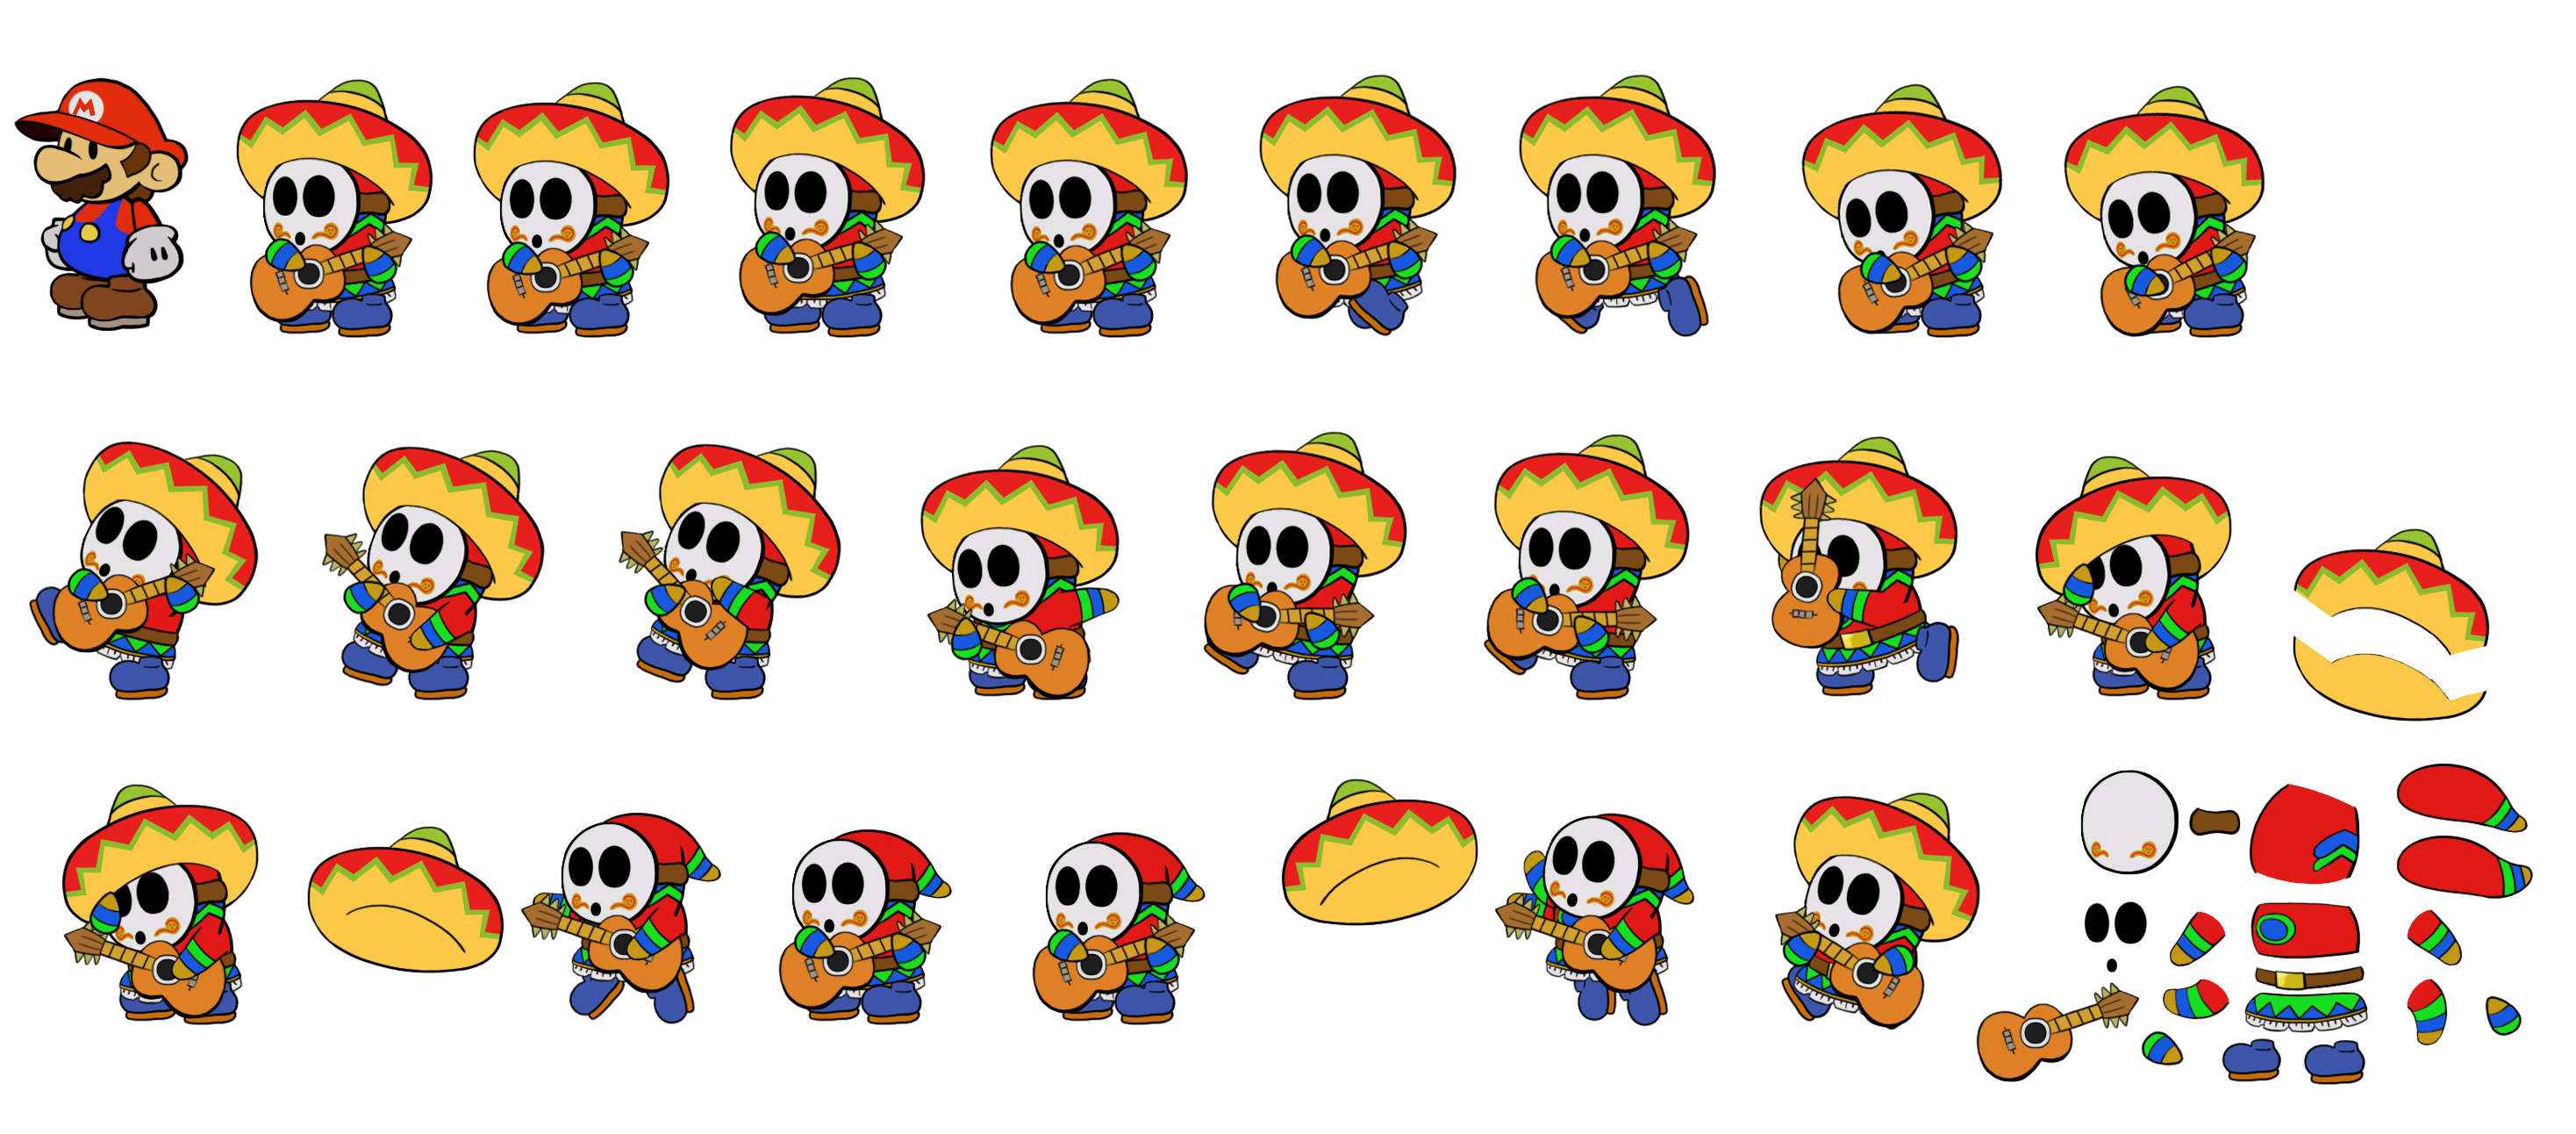 Paper Mario Customs - Sombrero Guy (Super Mario Odyssey, Paper Mario-Style)